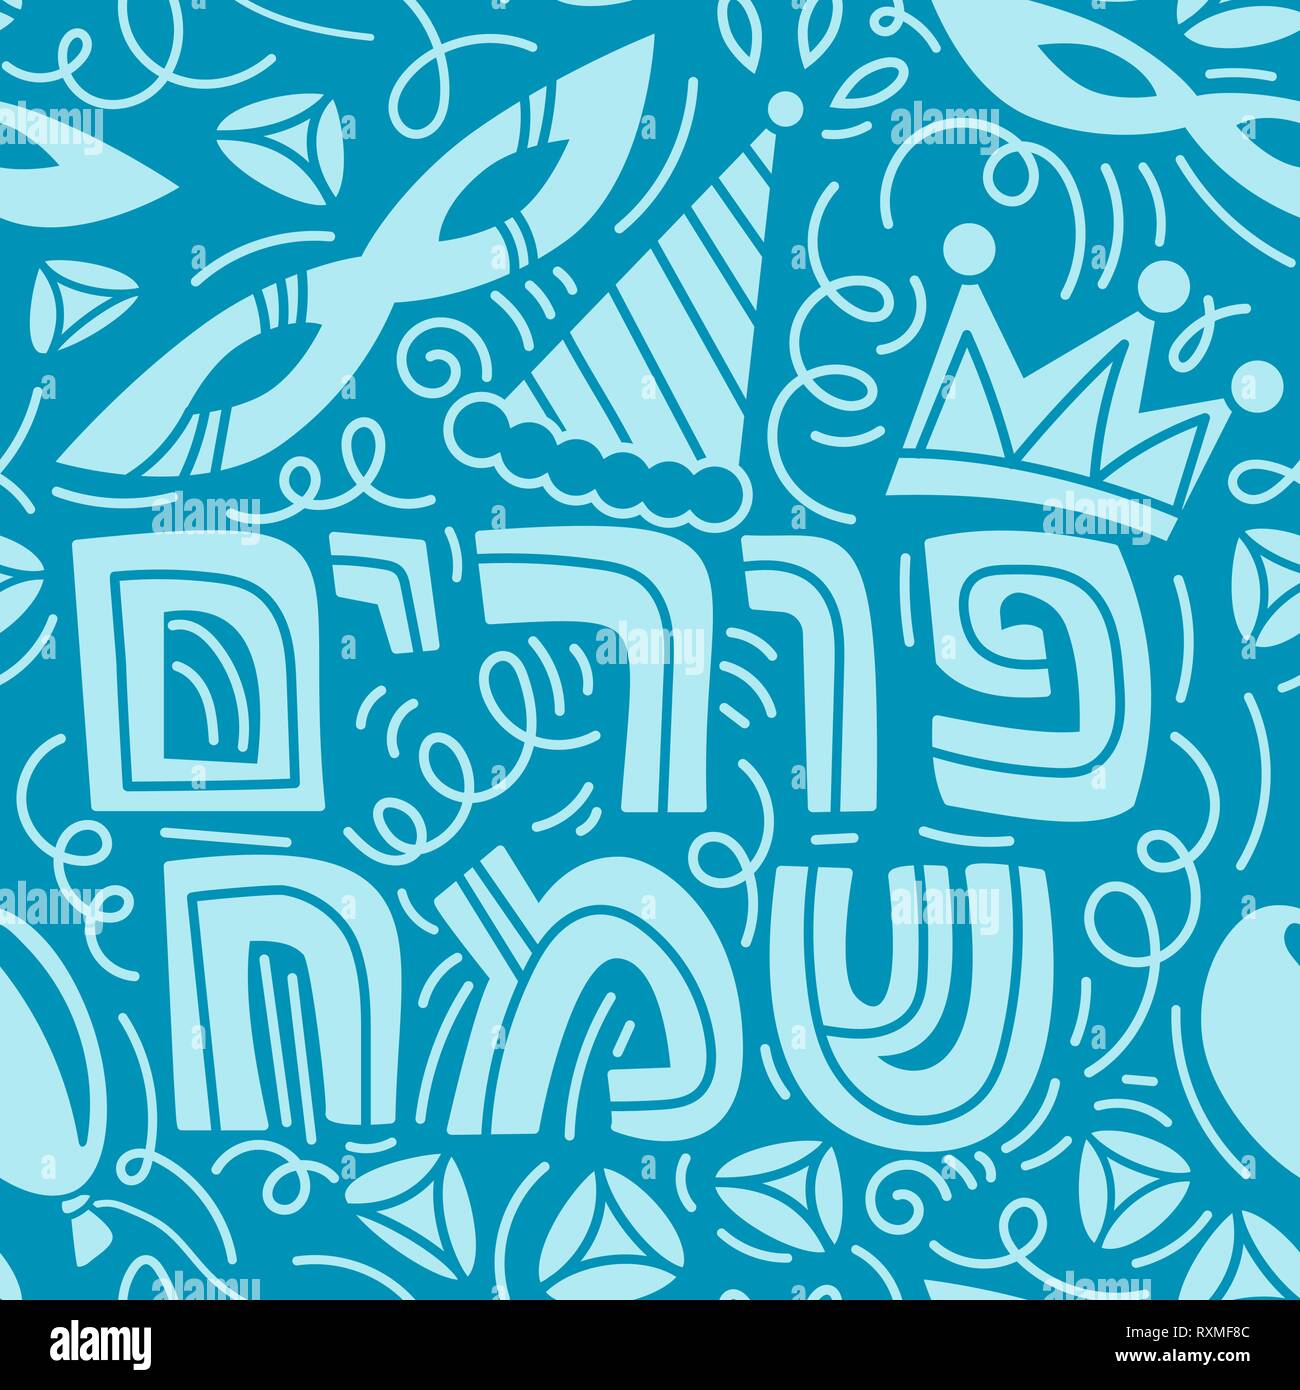 Purim nahtlose Muster mit Karneval Maske, Hüte, Krone, hamantaschen und hebräischen Text glücklich Purim. Monochromen Vector Illustration in Hand gezeichnet Doodles stiyle. Blauer Hintergrund Stock Vektor